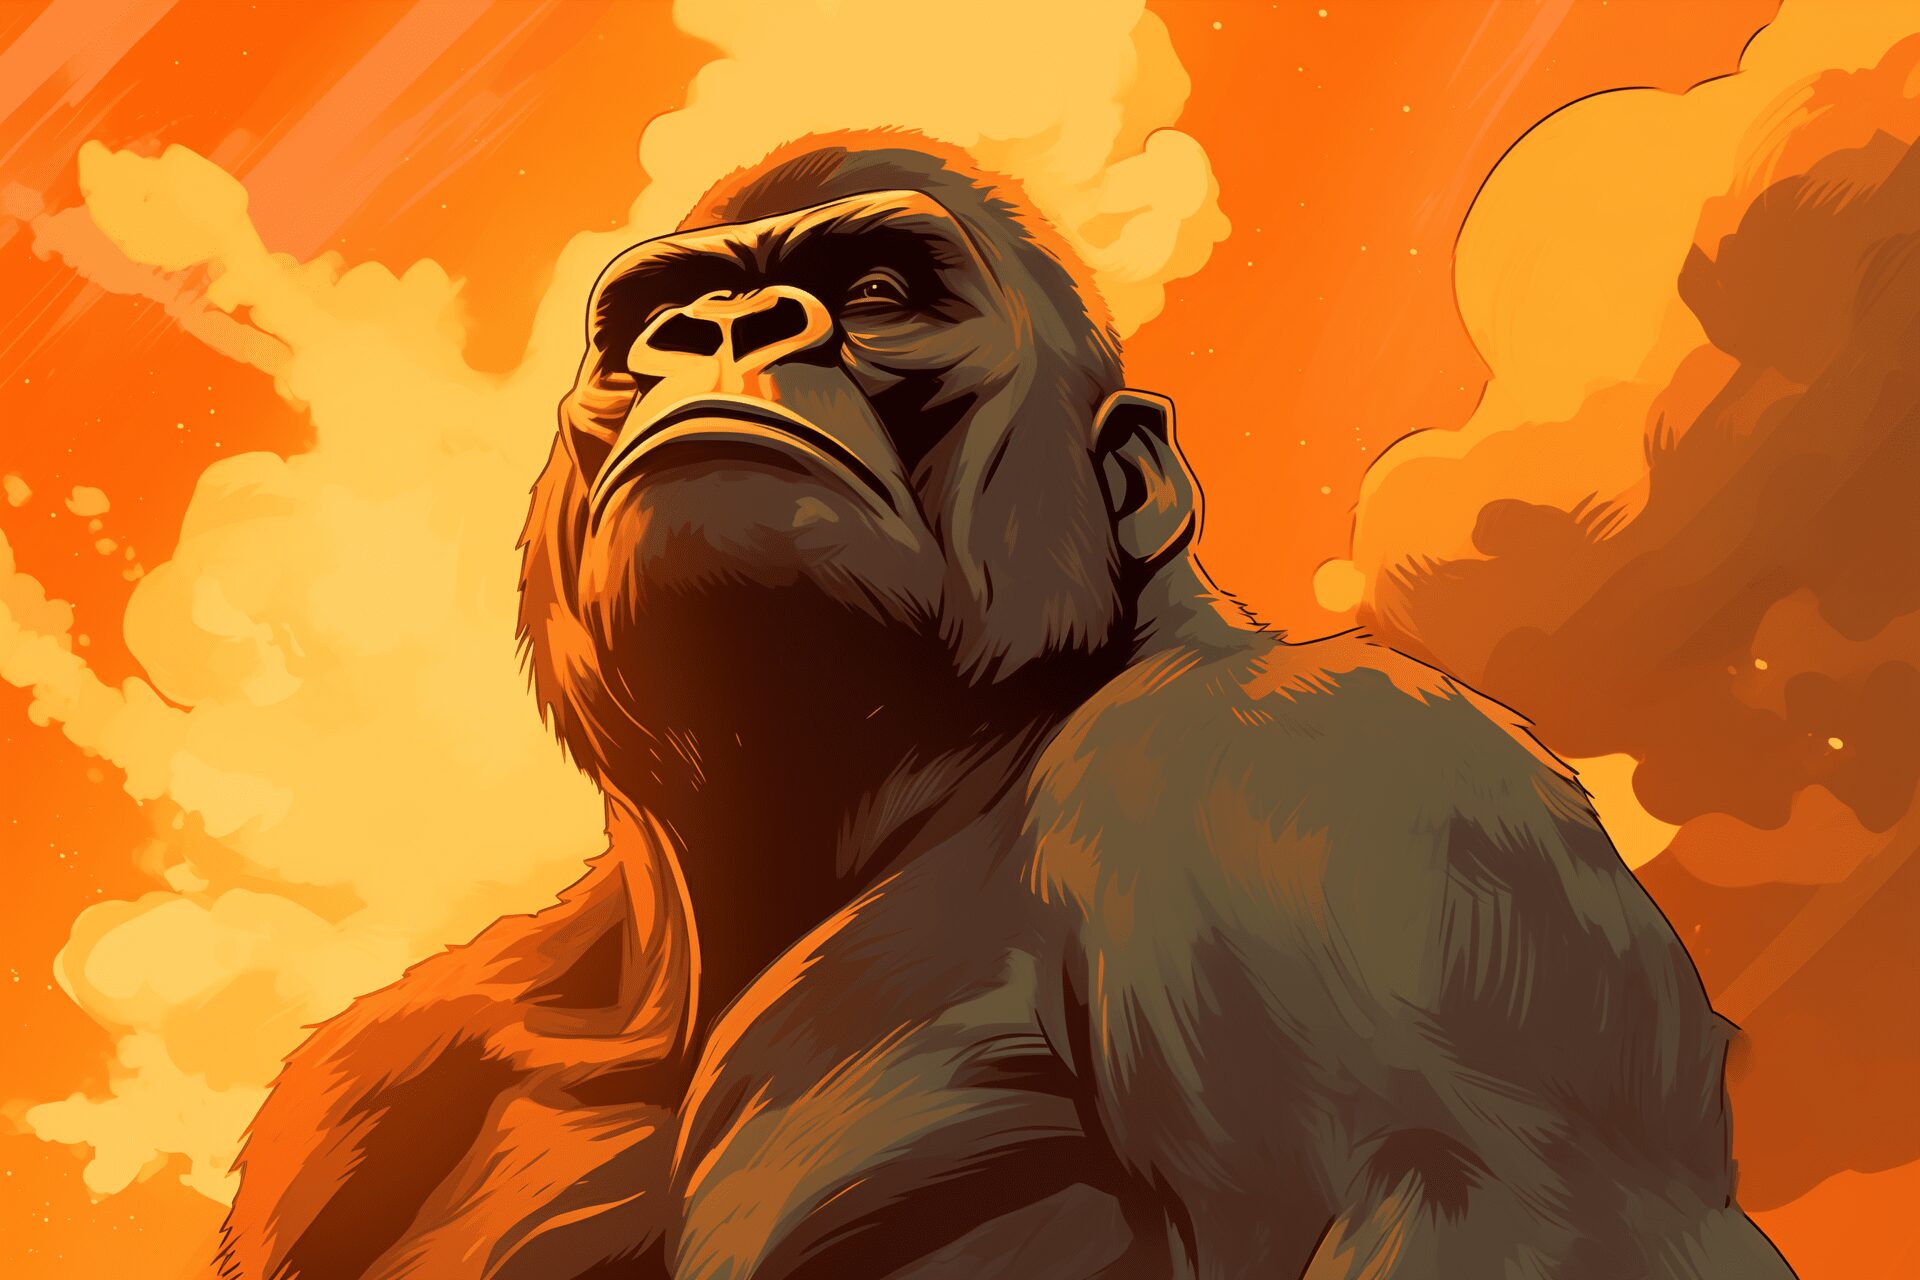 A gorilla gazing upward